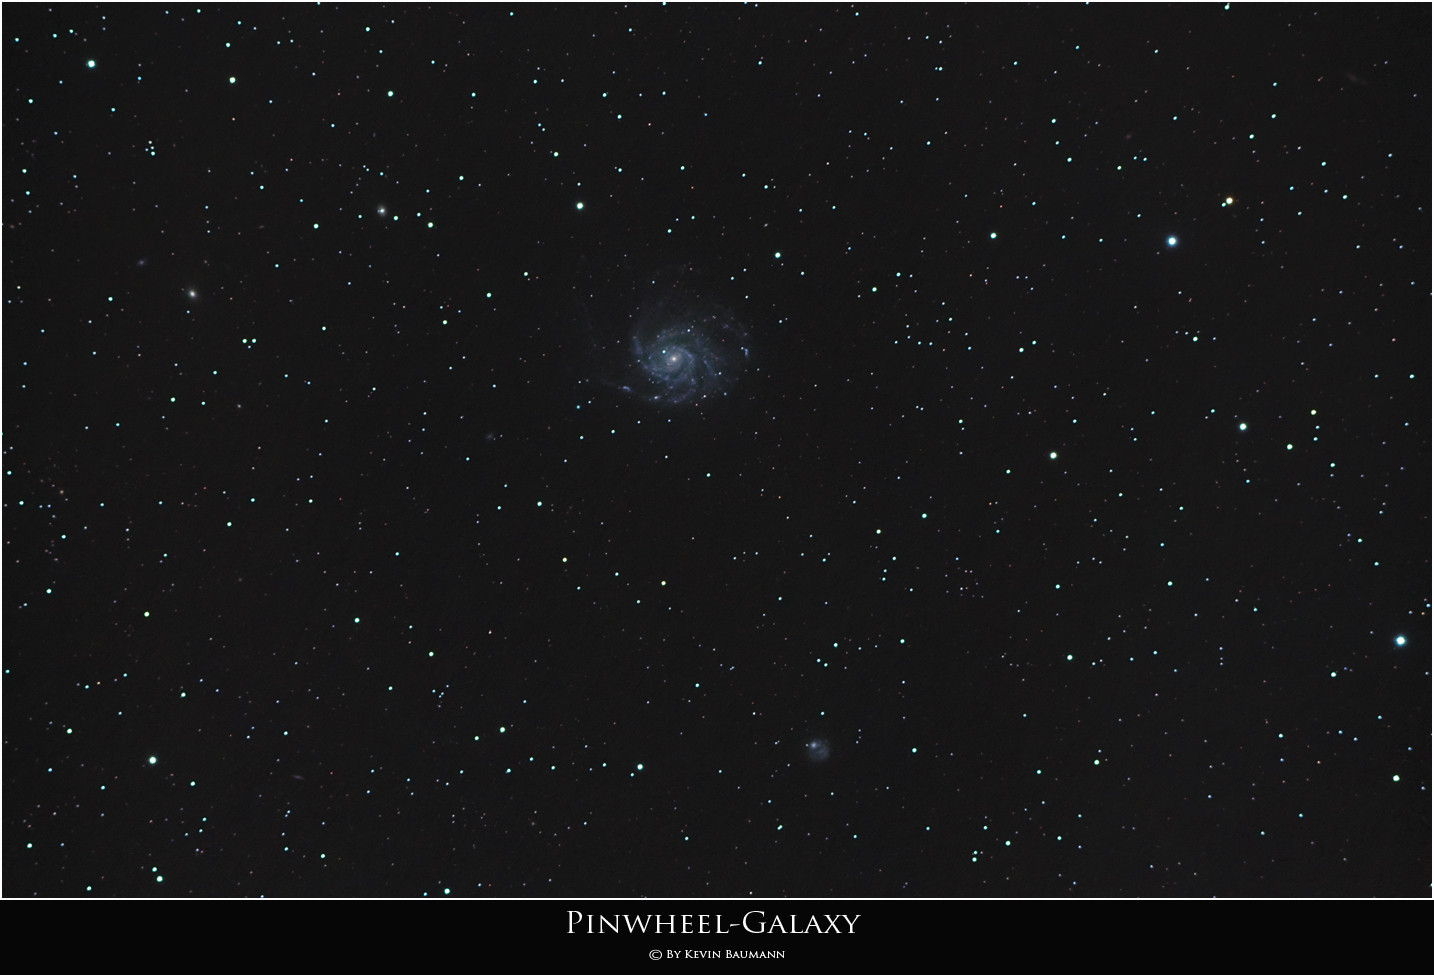 Pinwheel-Galaxie - M101